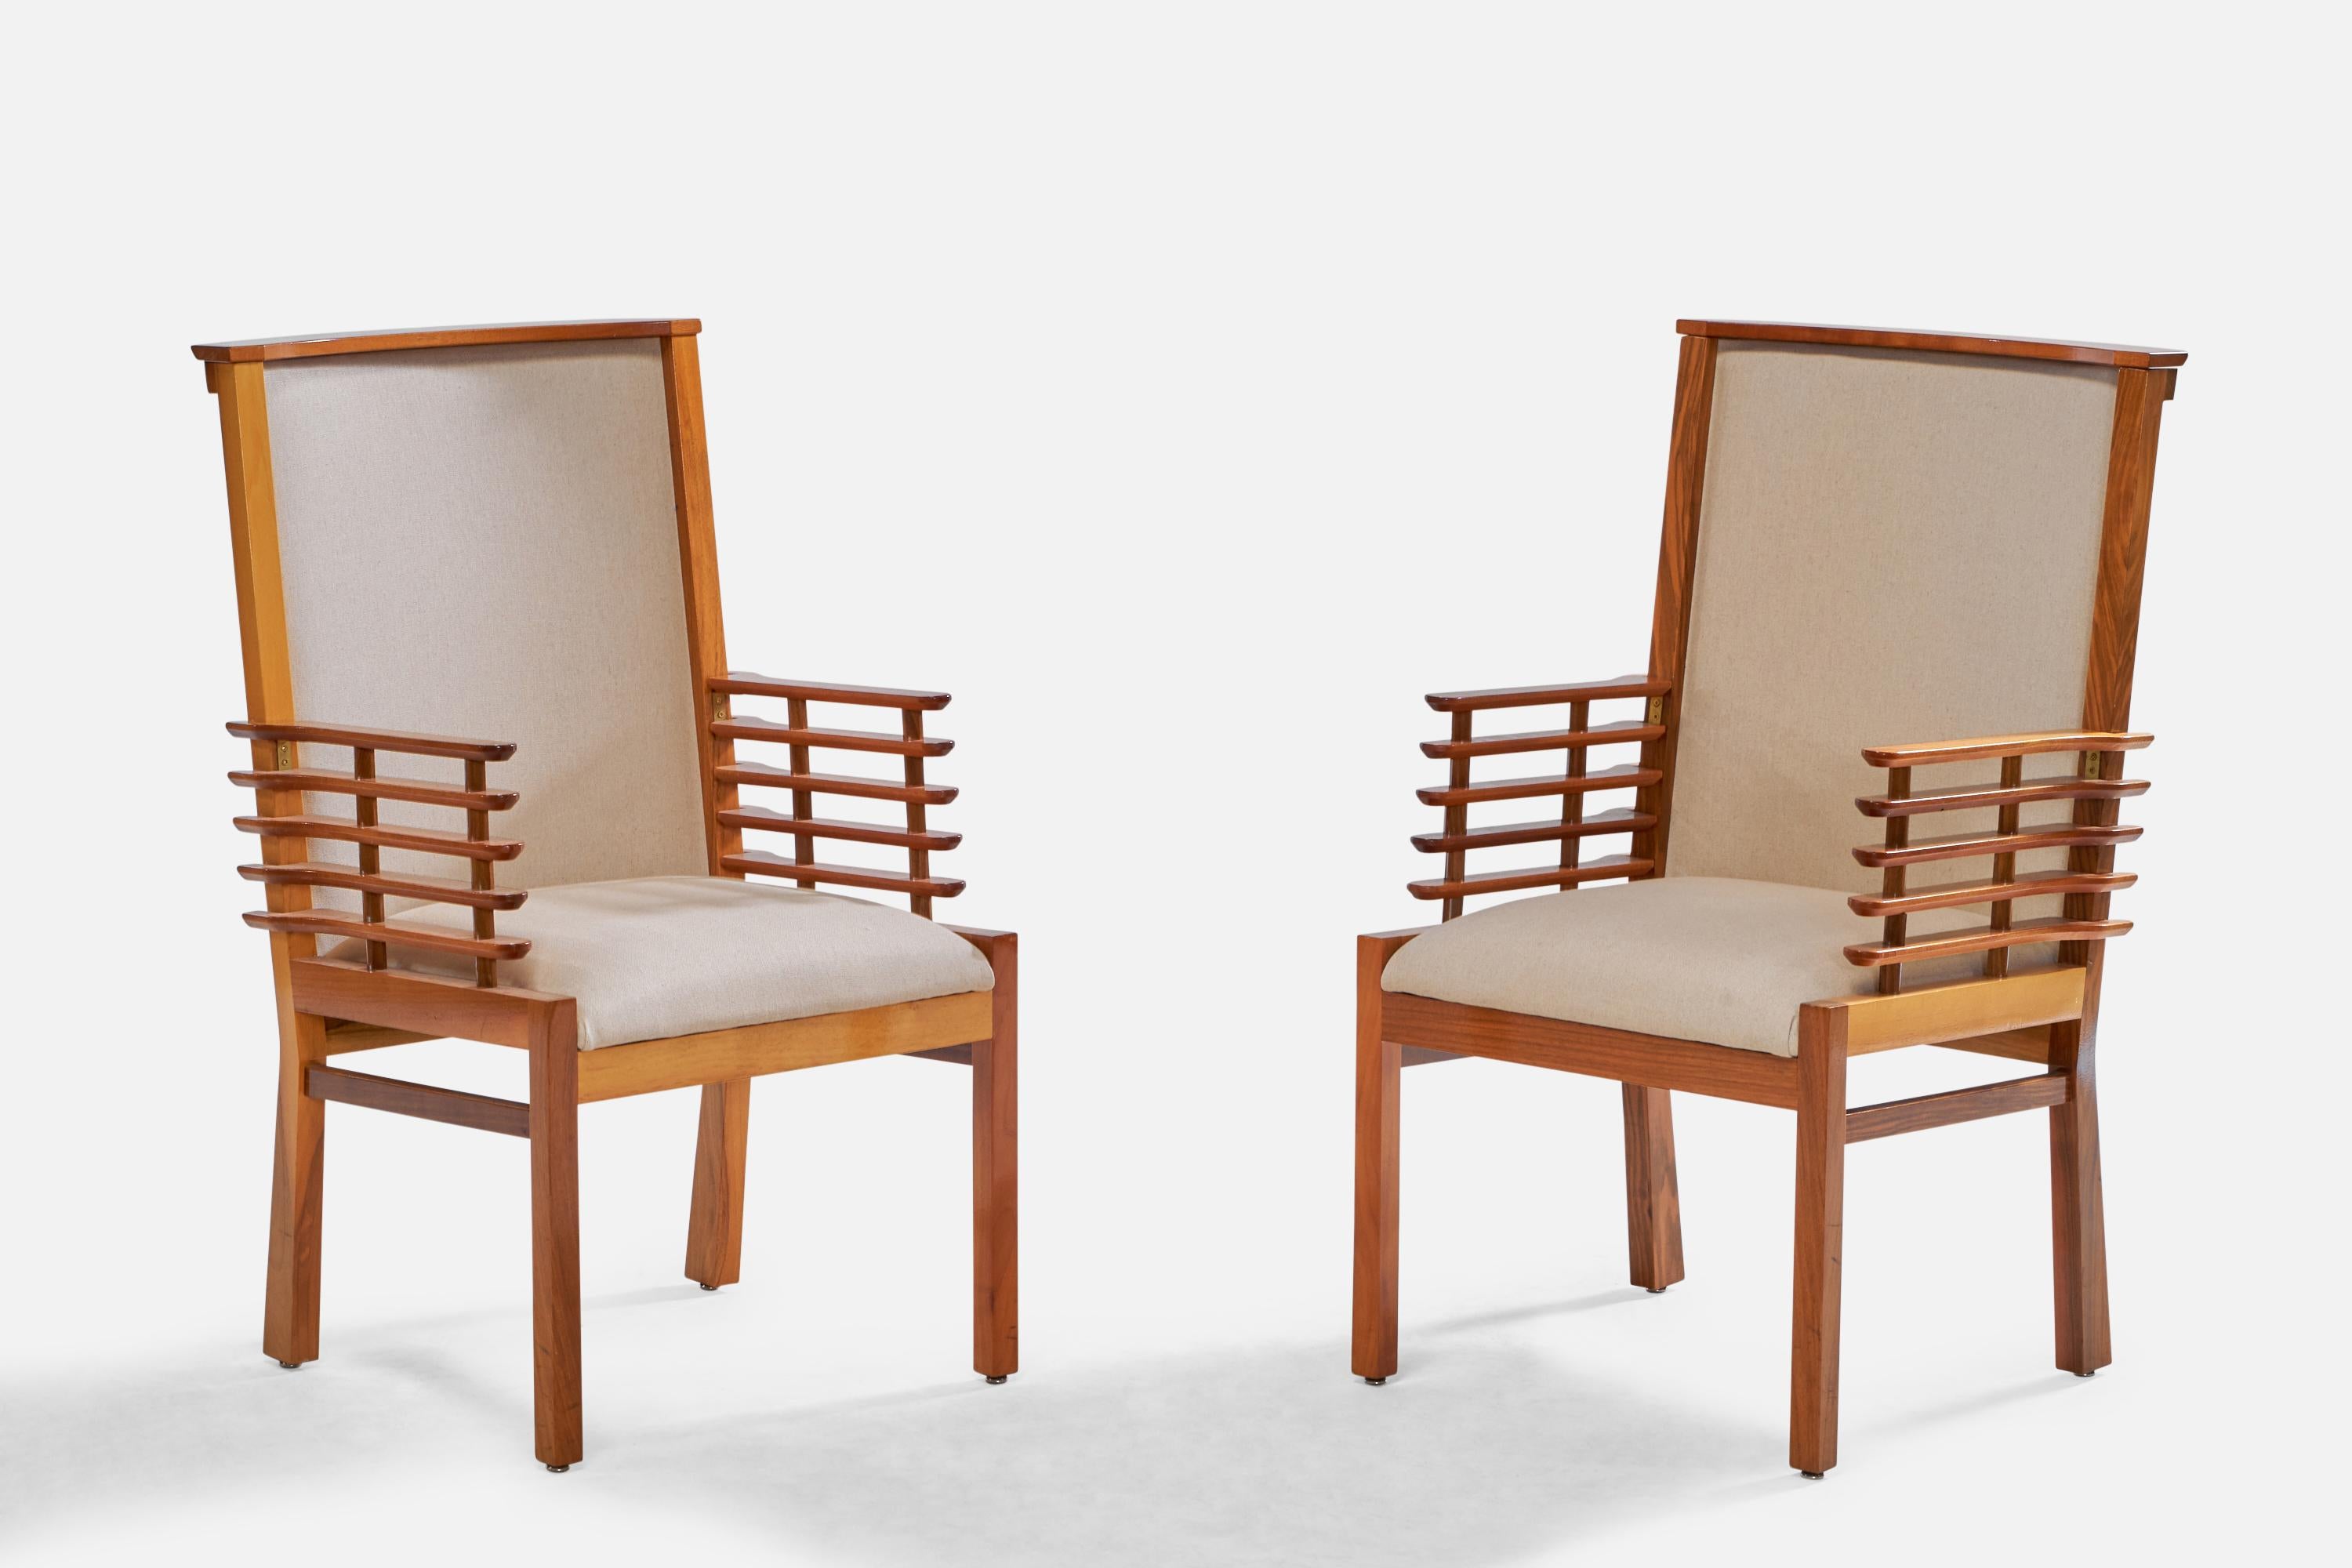 Paire de fauteuils en noyer et tissu blanc cassé, conçus et produits en Finlande, années 1950. 

Provenance : Helsingin Puhelinyhdistys

Hauteur du siège : 19.5